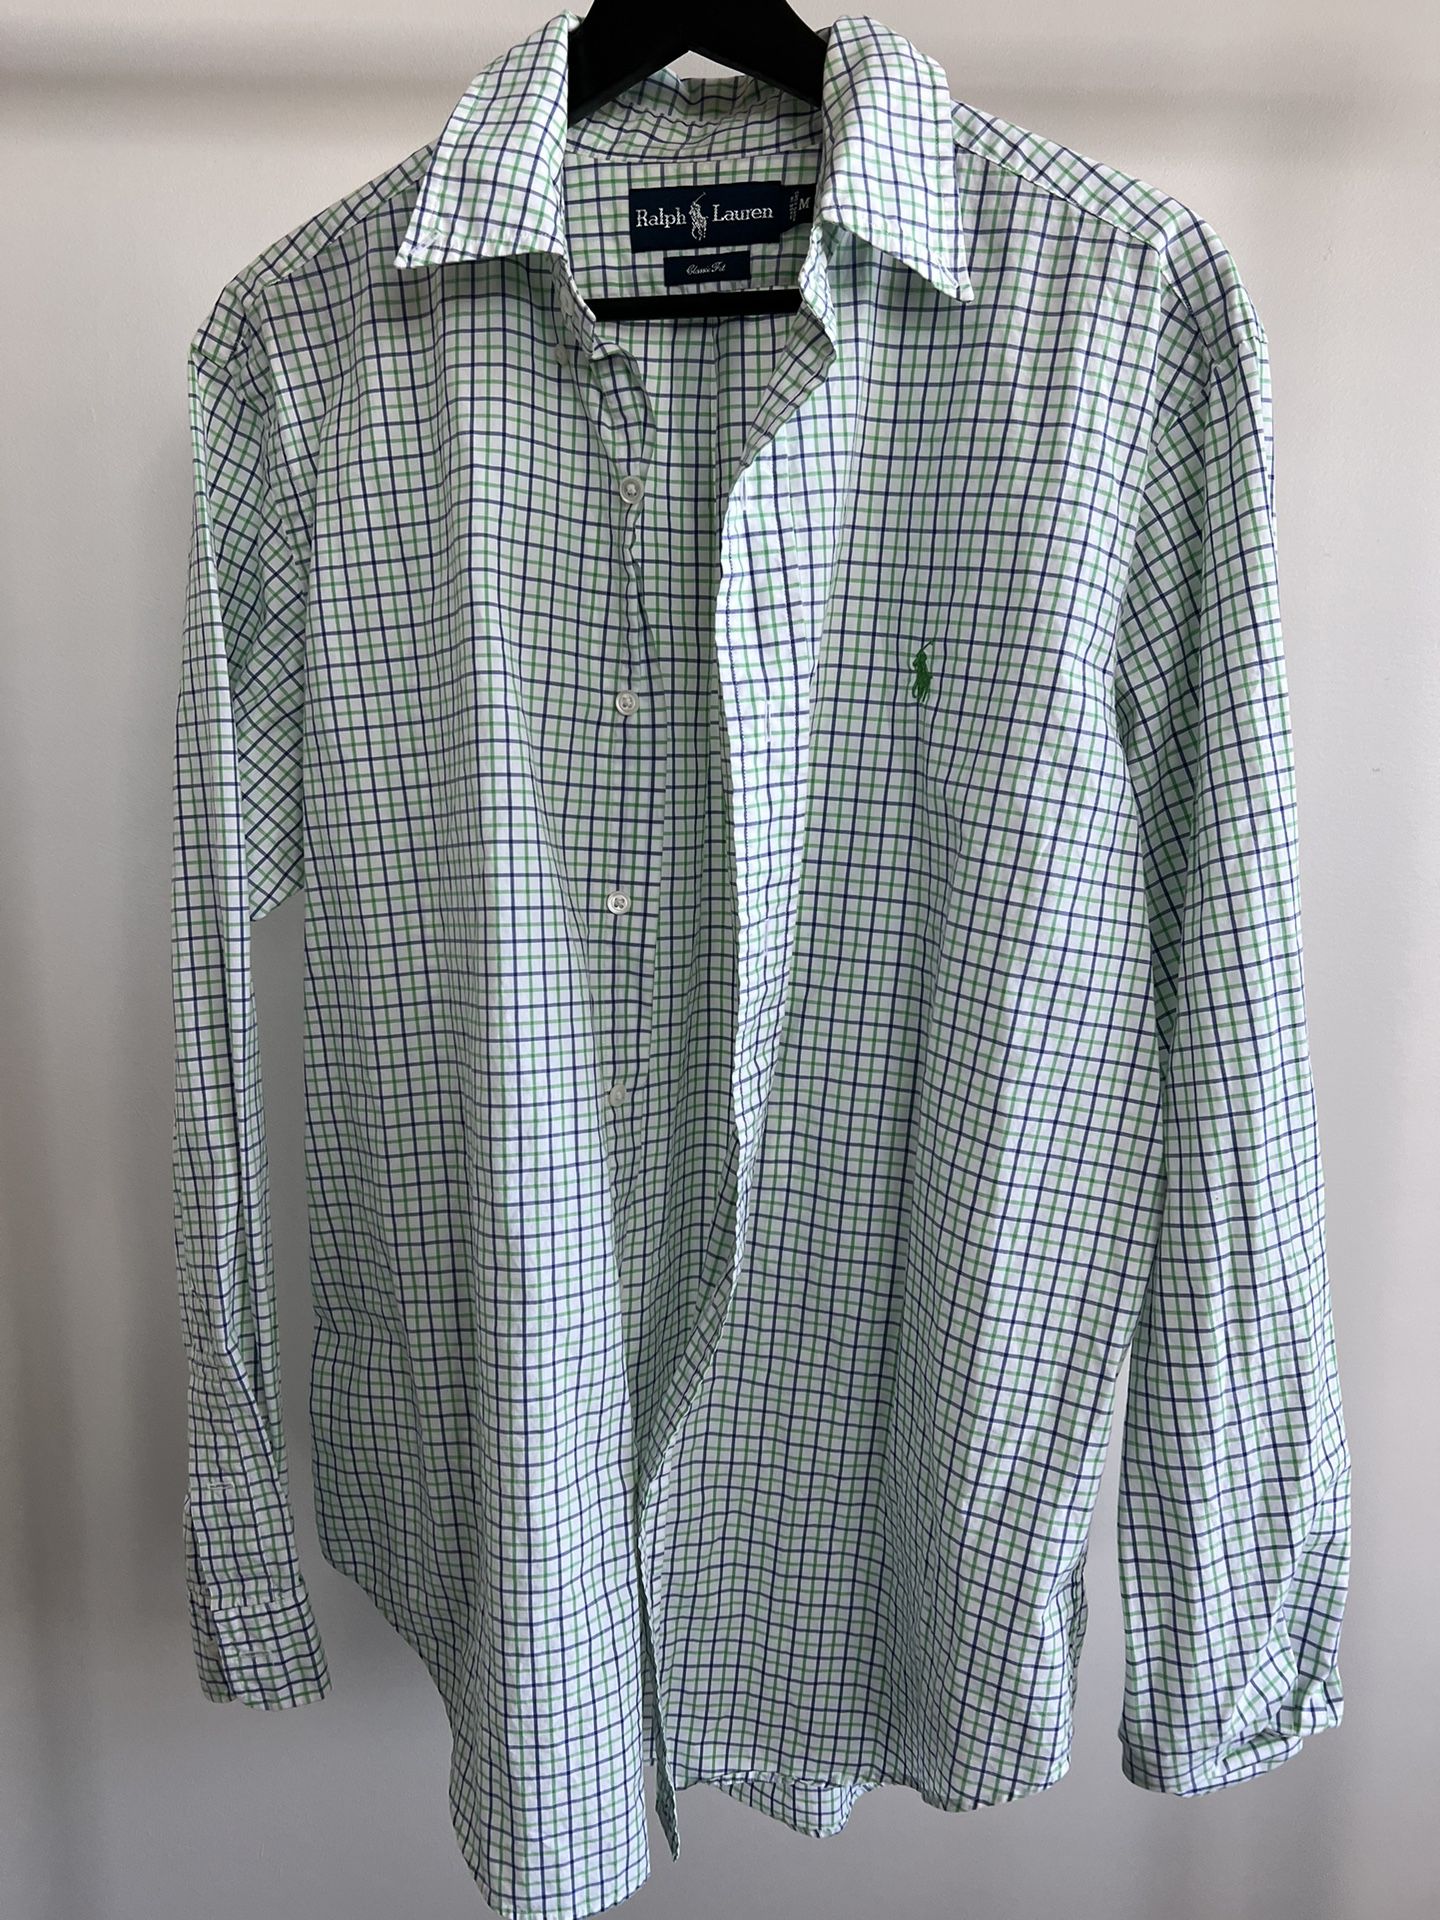 Ralph Lauren Polo Dress Shirt